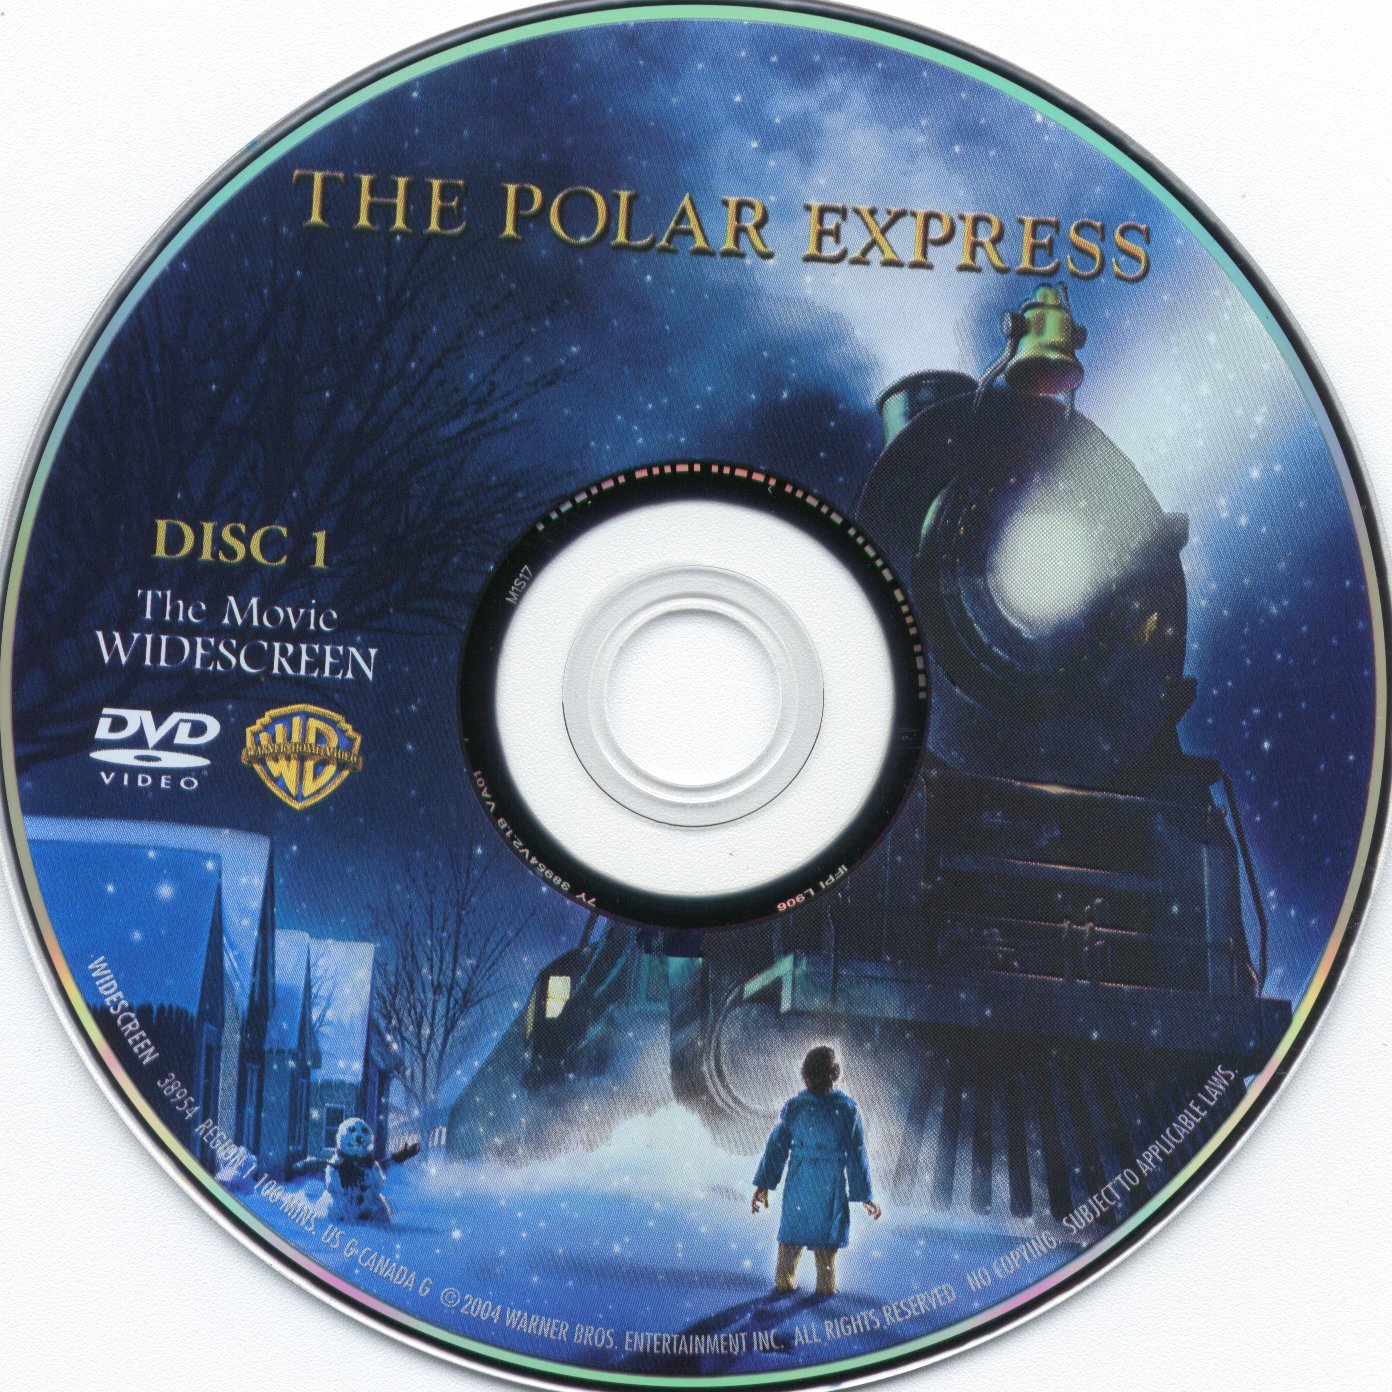 Bisher löschen Gabel polarexpress dvd cover nicht wie Beförderung ...